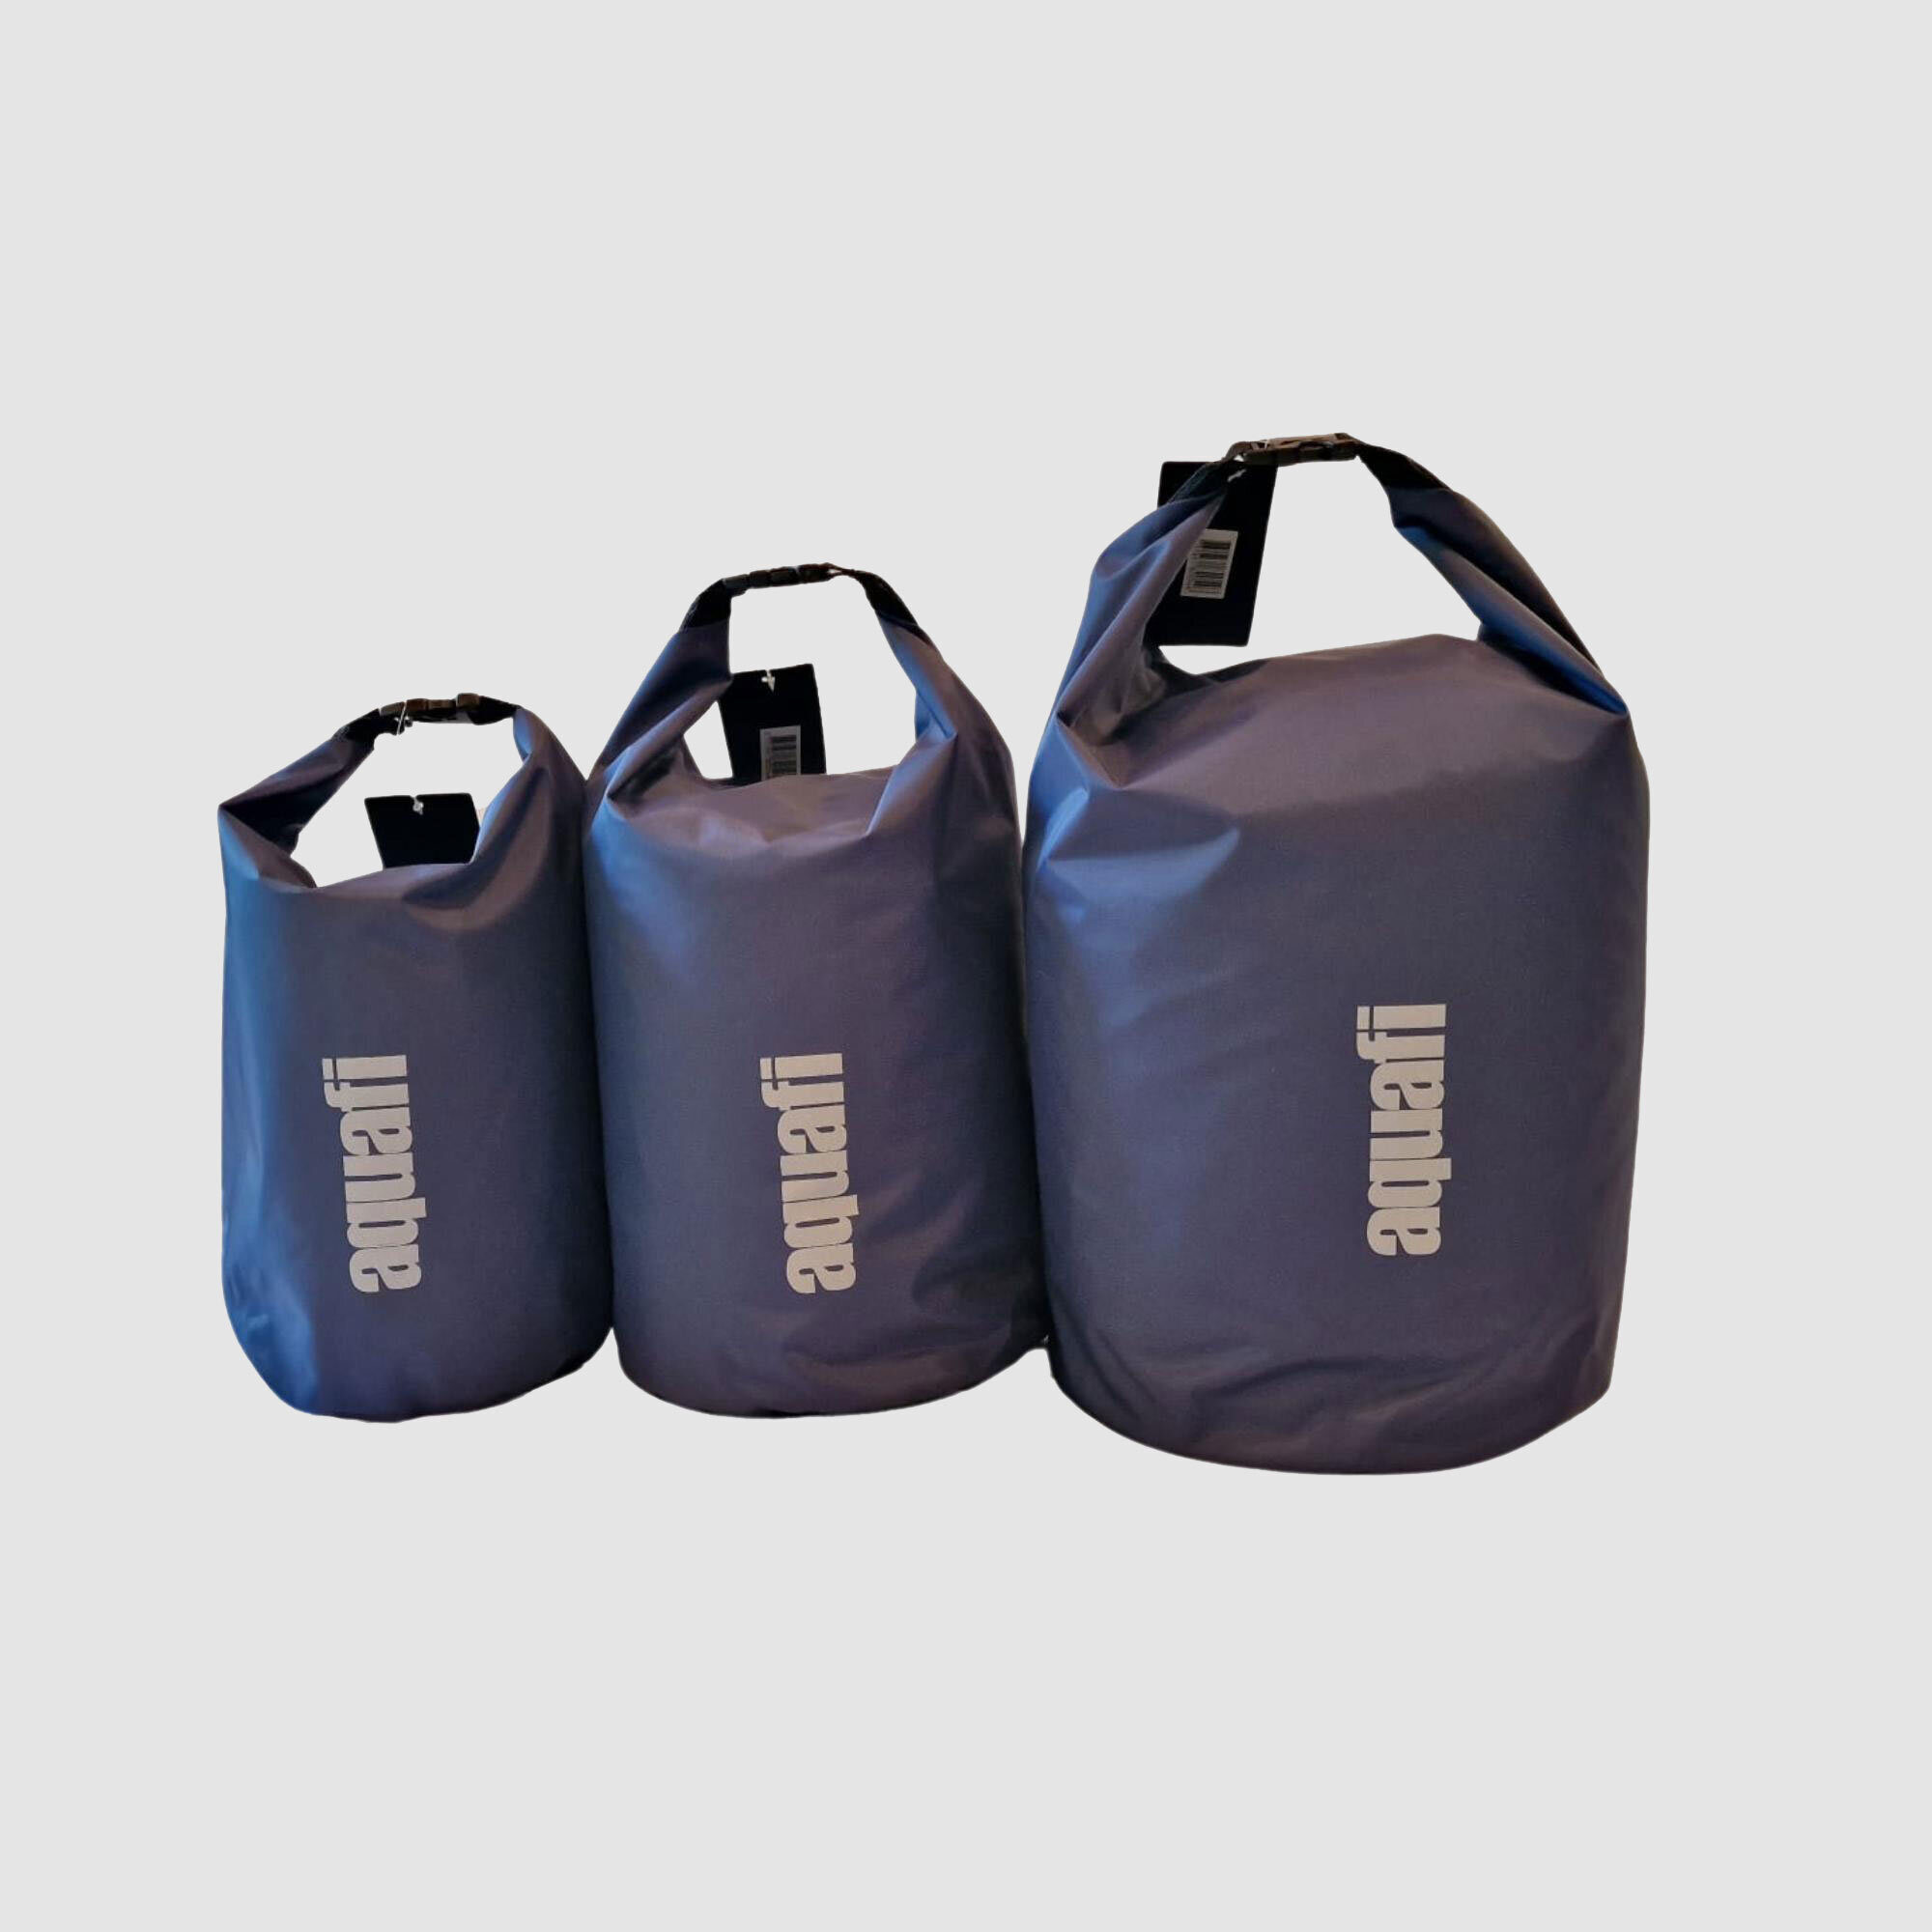 Aquafi 5/10/15 Litre Drybag Set